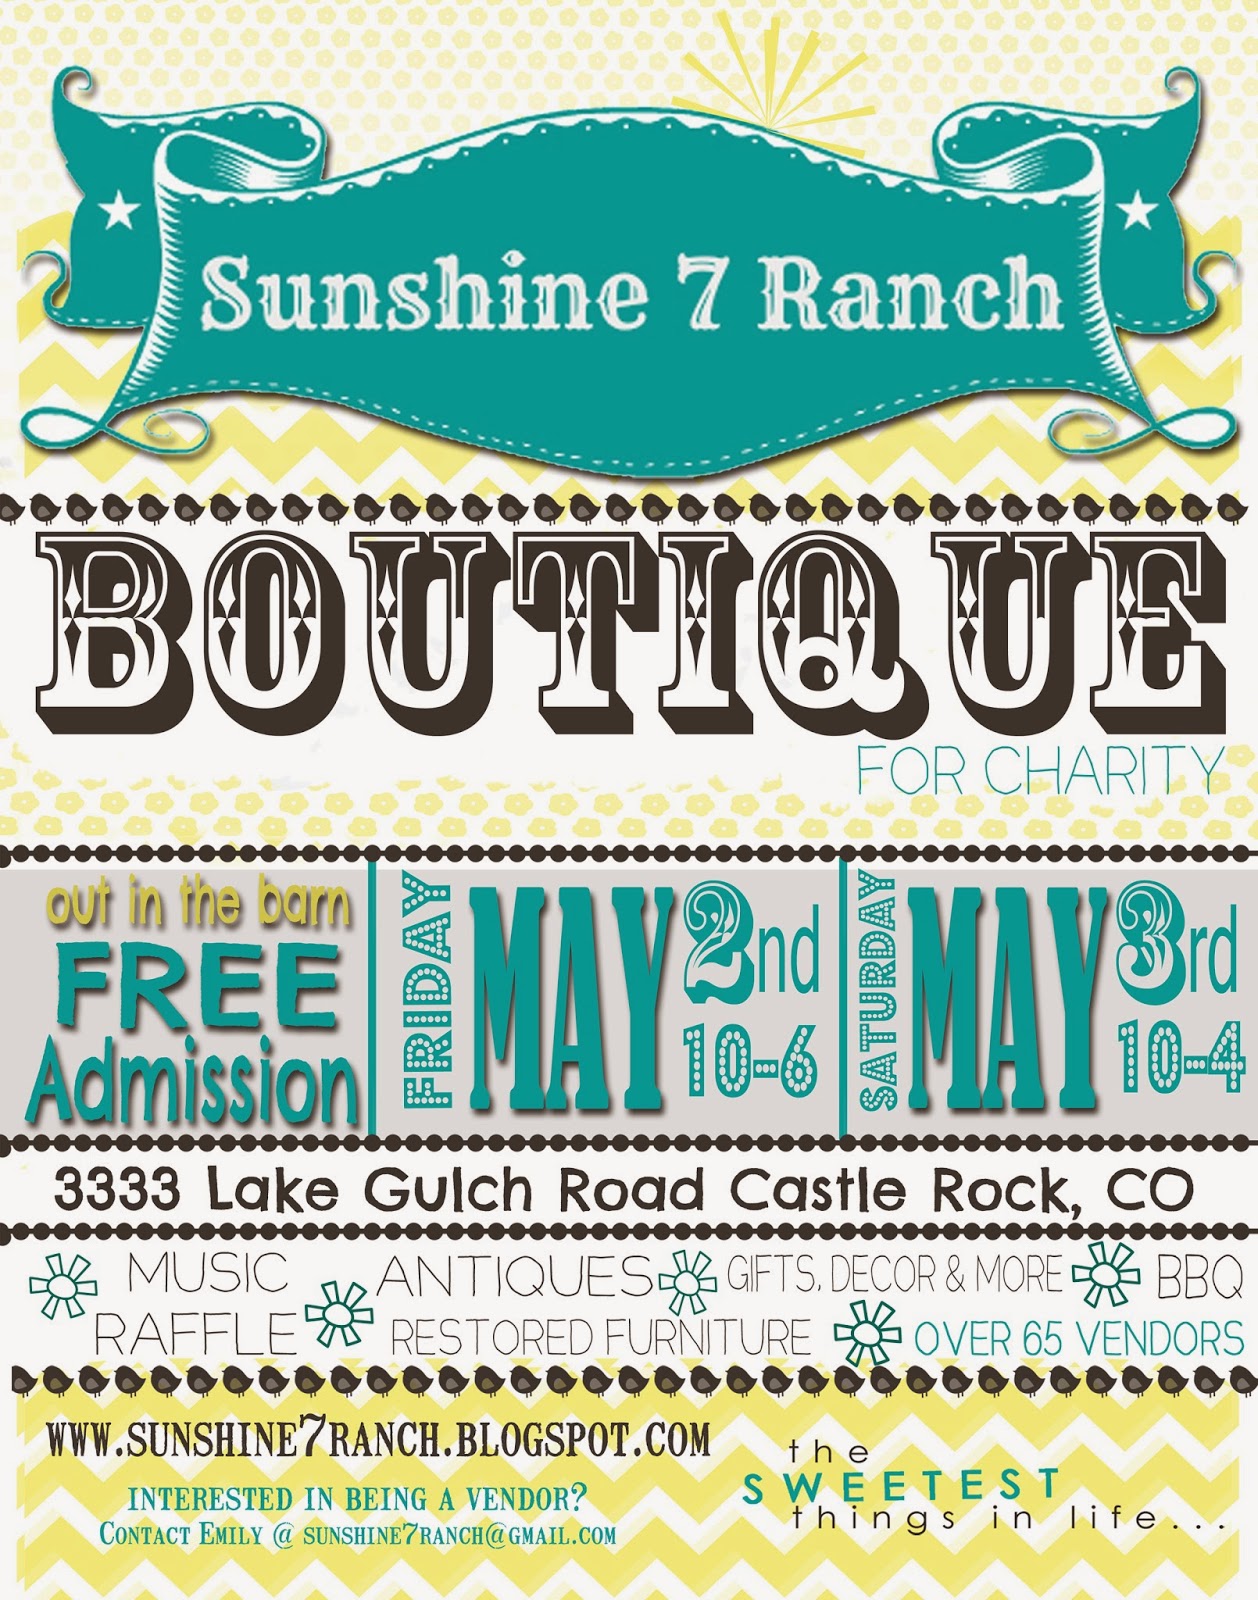 Sunshine 7 Ranch Boutique